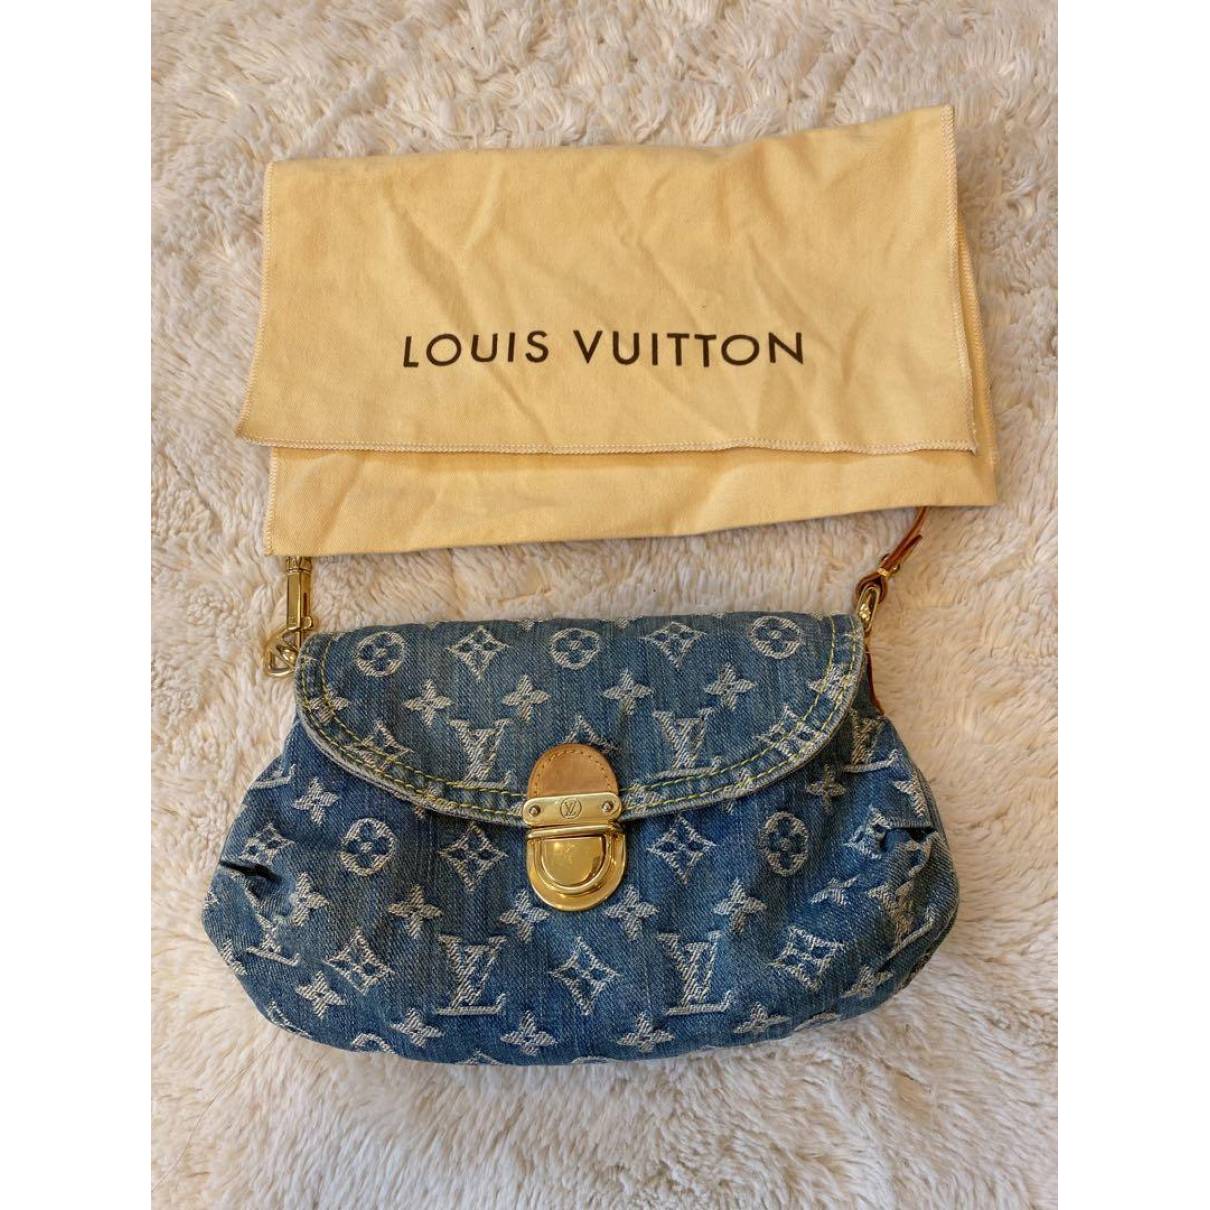 Pleaty handbag Louis Vuitton Blue in Denim - Jeans - 34738910